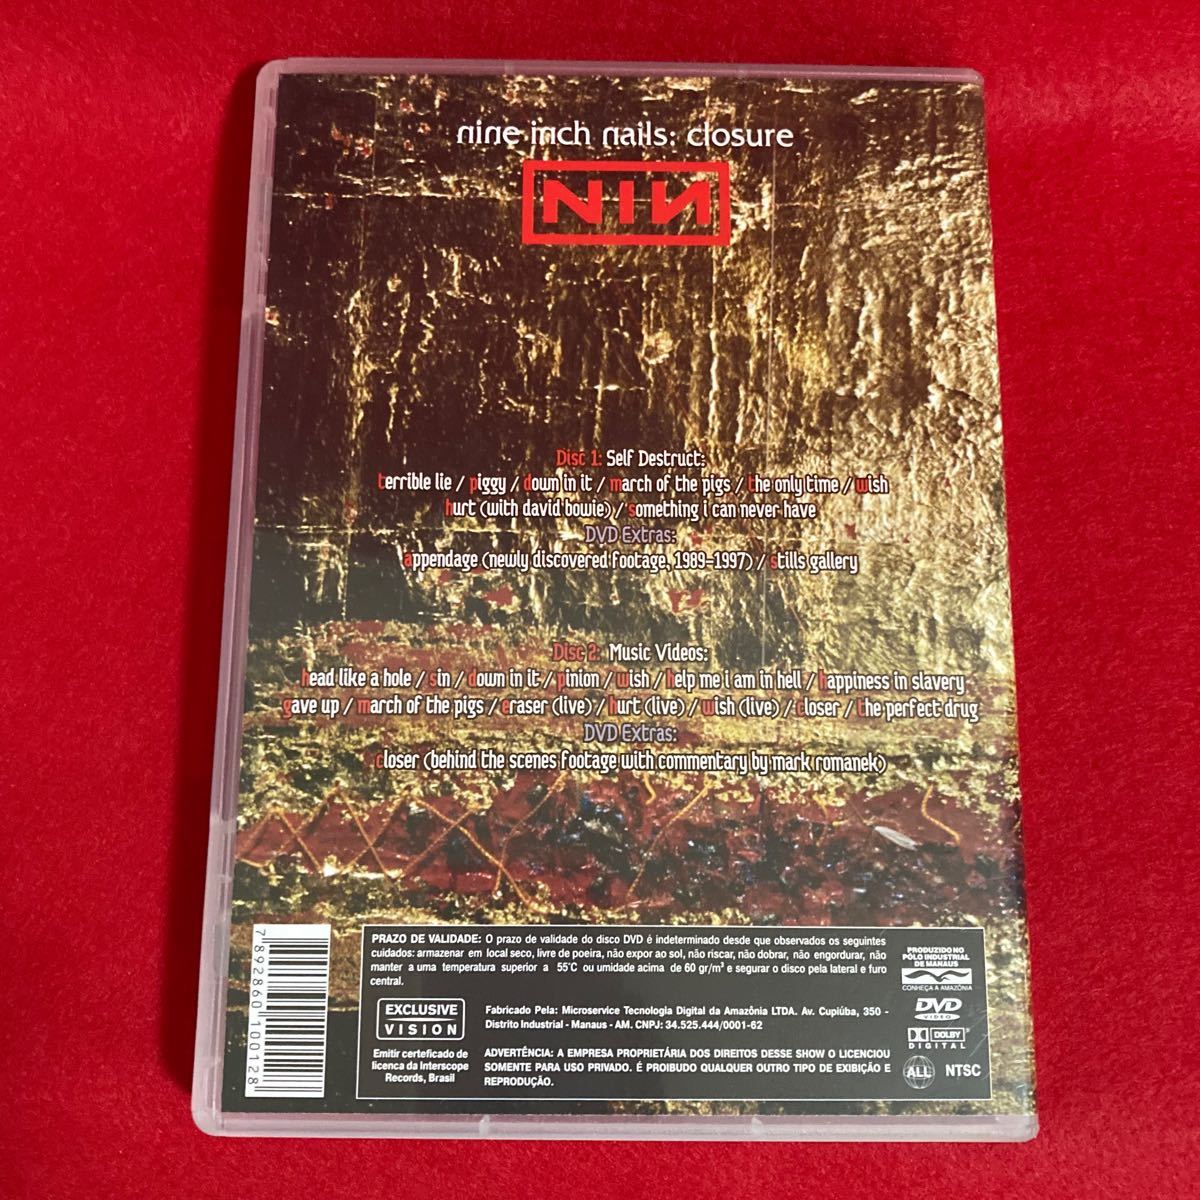 【激レア】Nine Inch Nails/ナイン・インチ・ネイルズ closure DVD